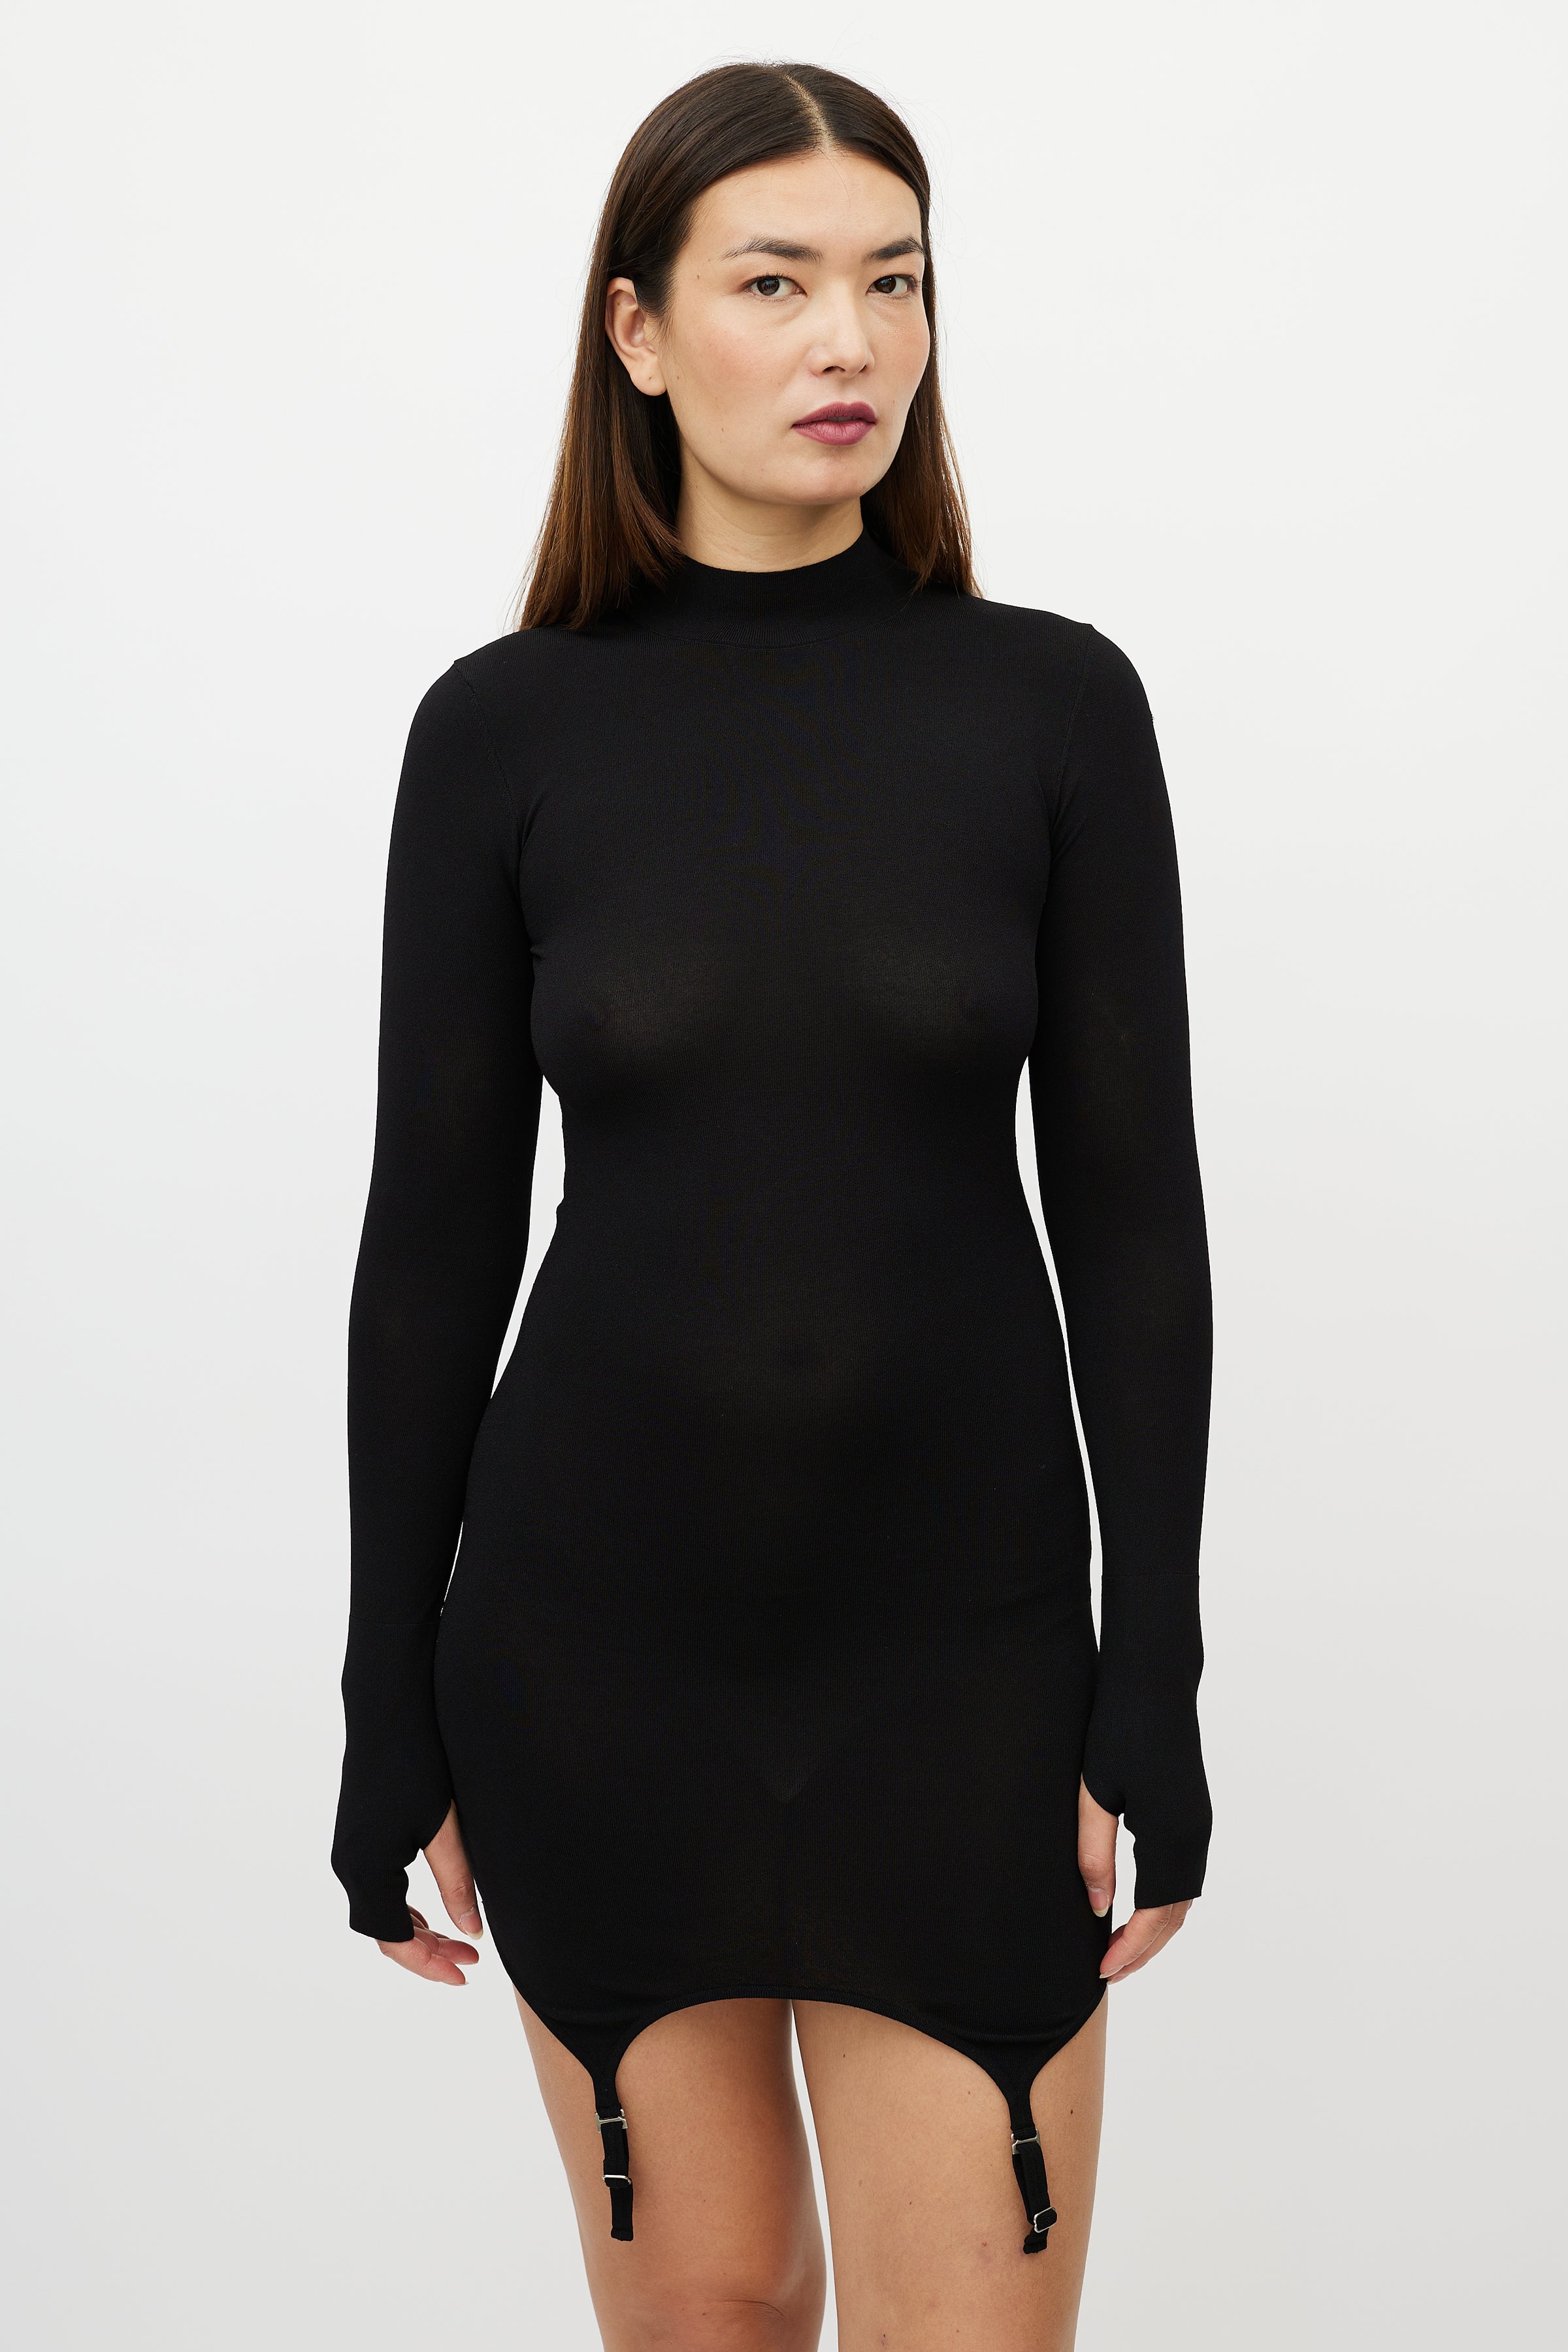 Dion Lee // Black Mock Neck Garter Dress – VSP Consignment